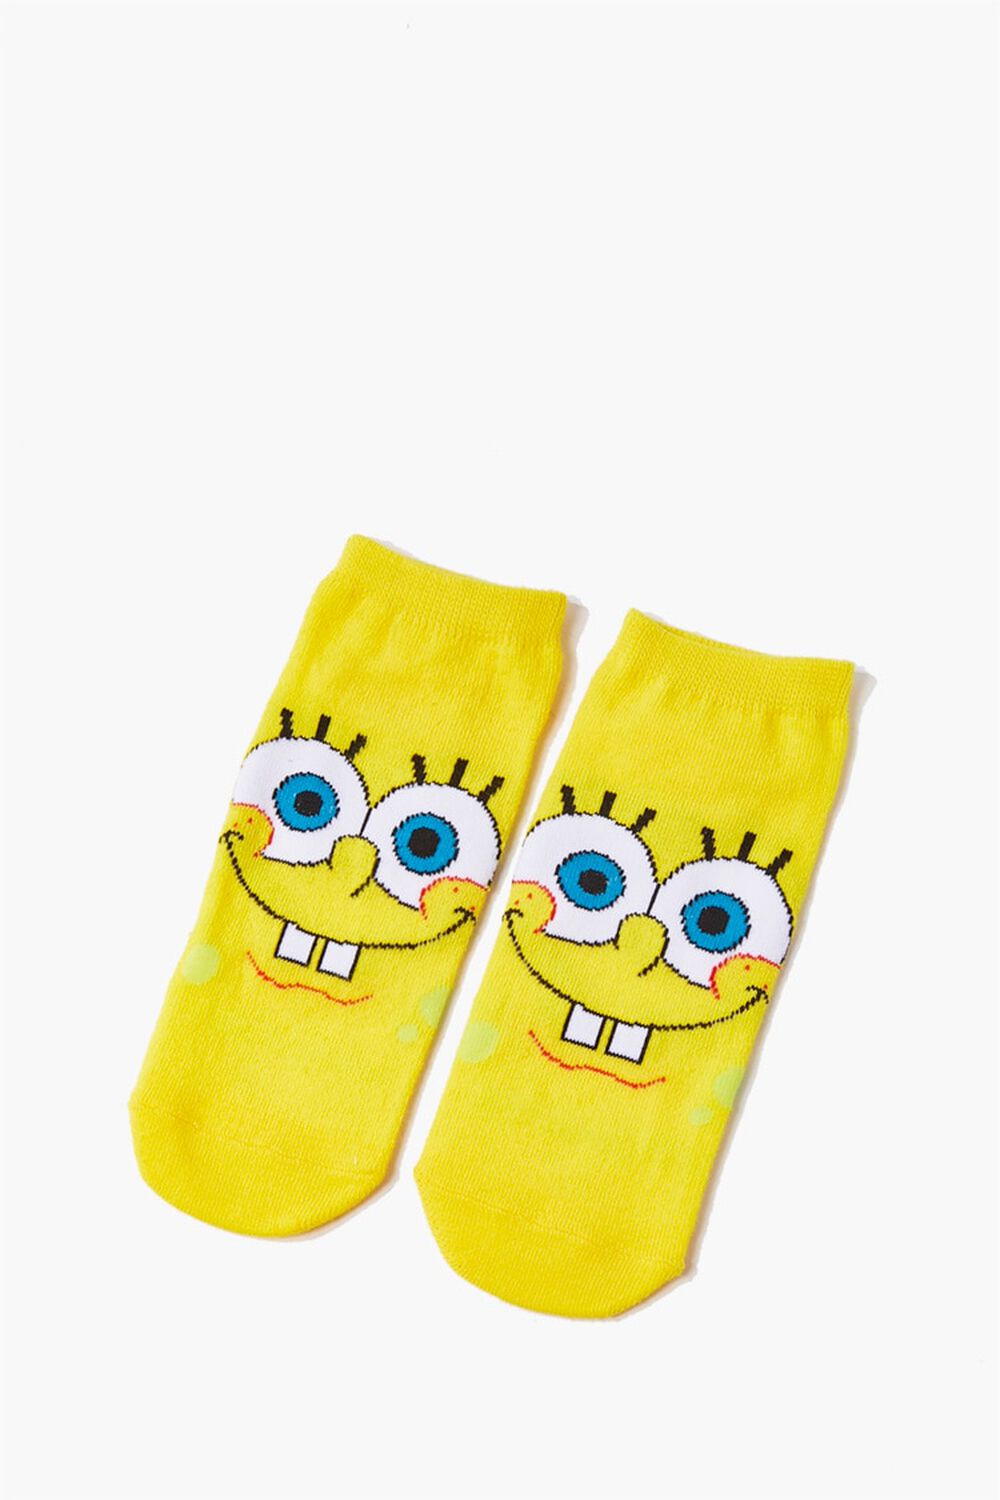 forever21.com | SpongeBob SquarePants Ankle Socks